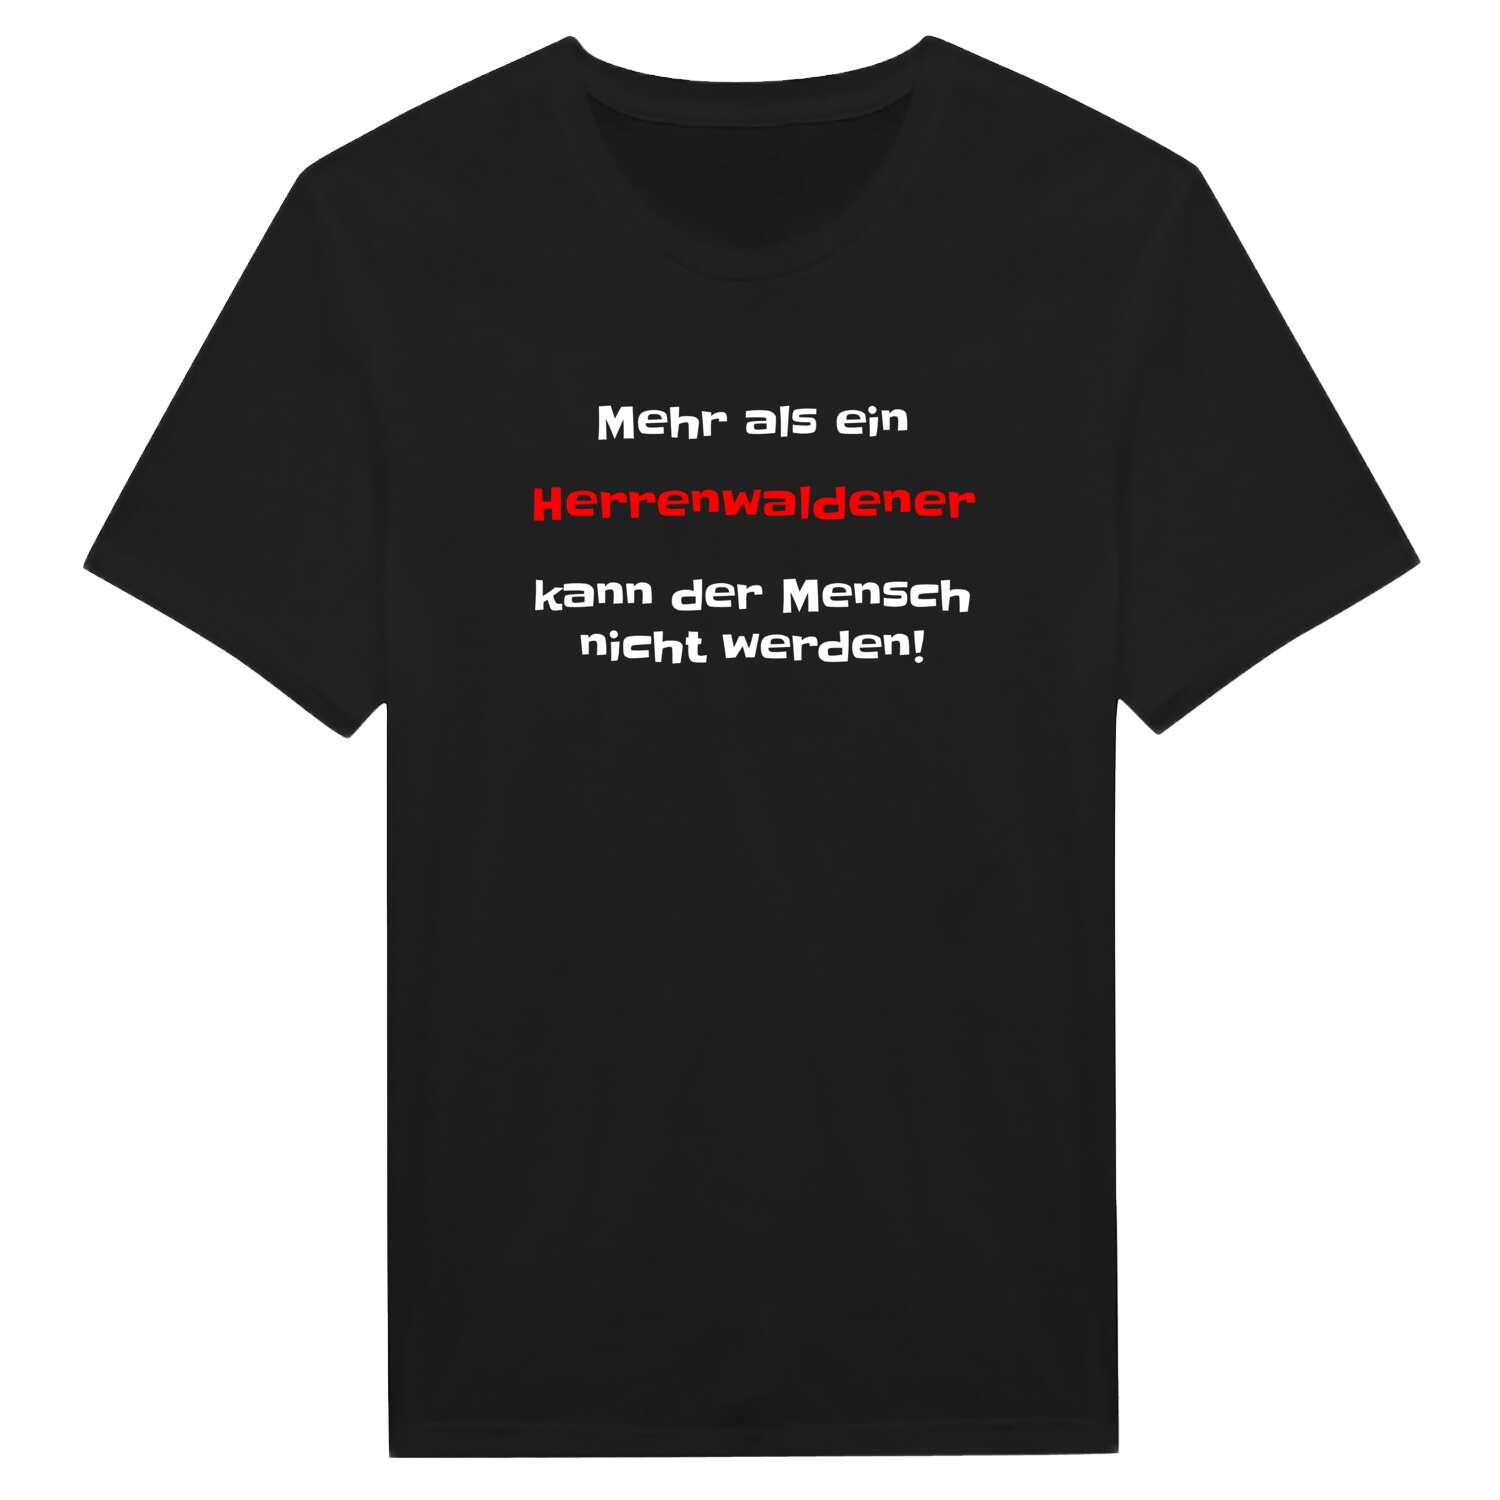 Herrenwalde T-Shirt »Mehr als ein«